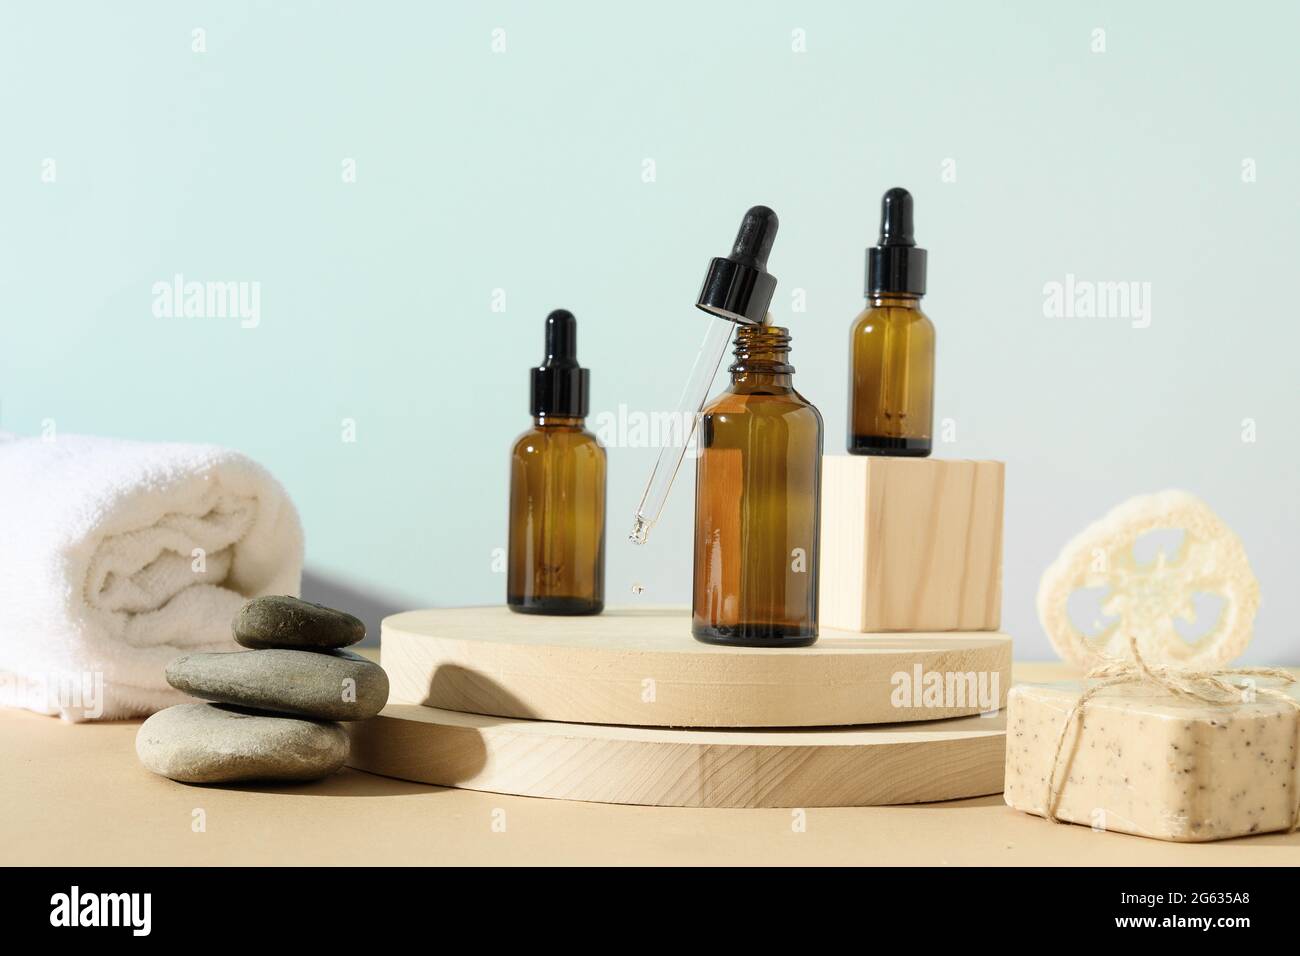 Minimale moderne natürliche Zusammensetzung mit Kosmetiköl in Flaschen, Naturstein, Loofa auf Ständer auf beige und blauem Hintergrund. SPA-Set für die Körperpflege. Stockfoto